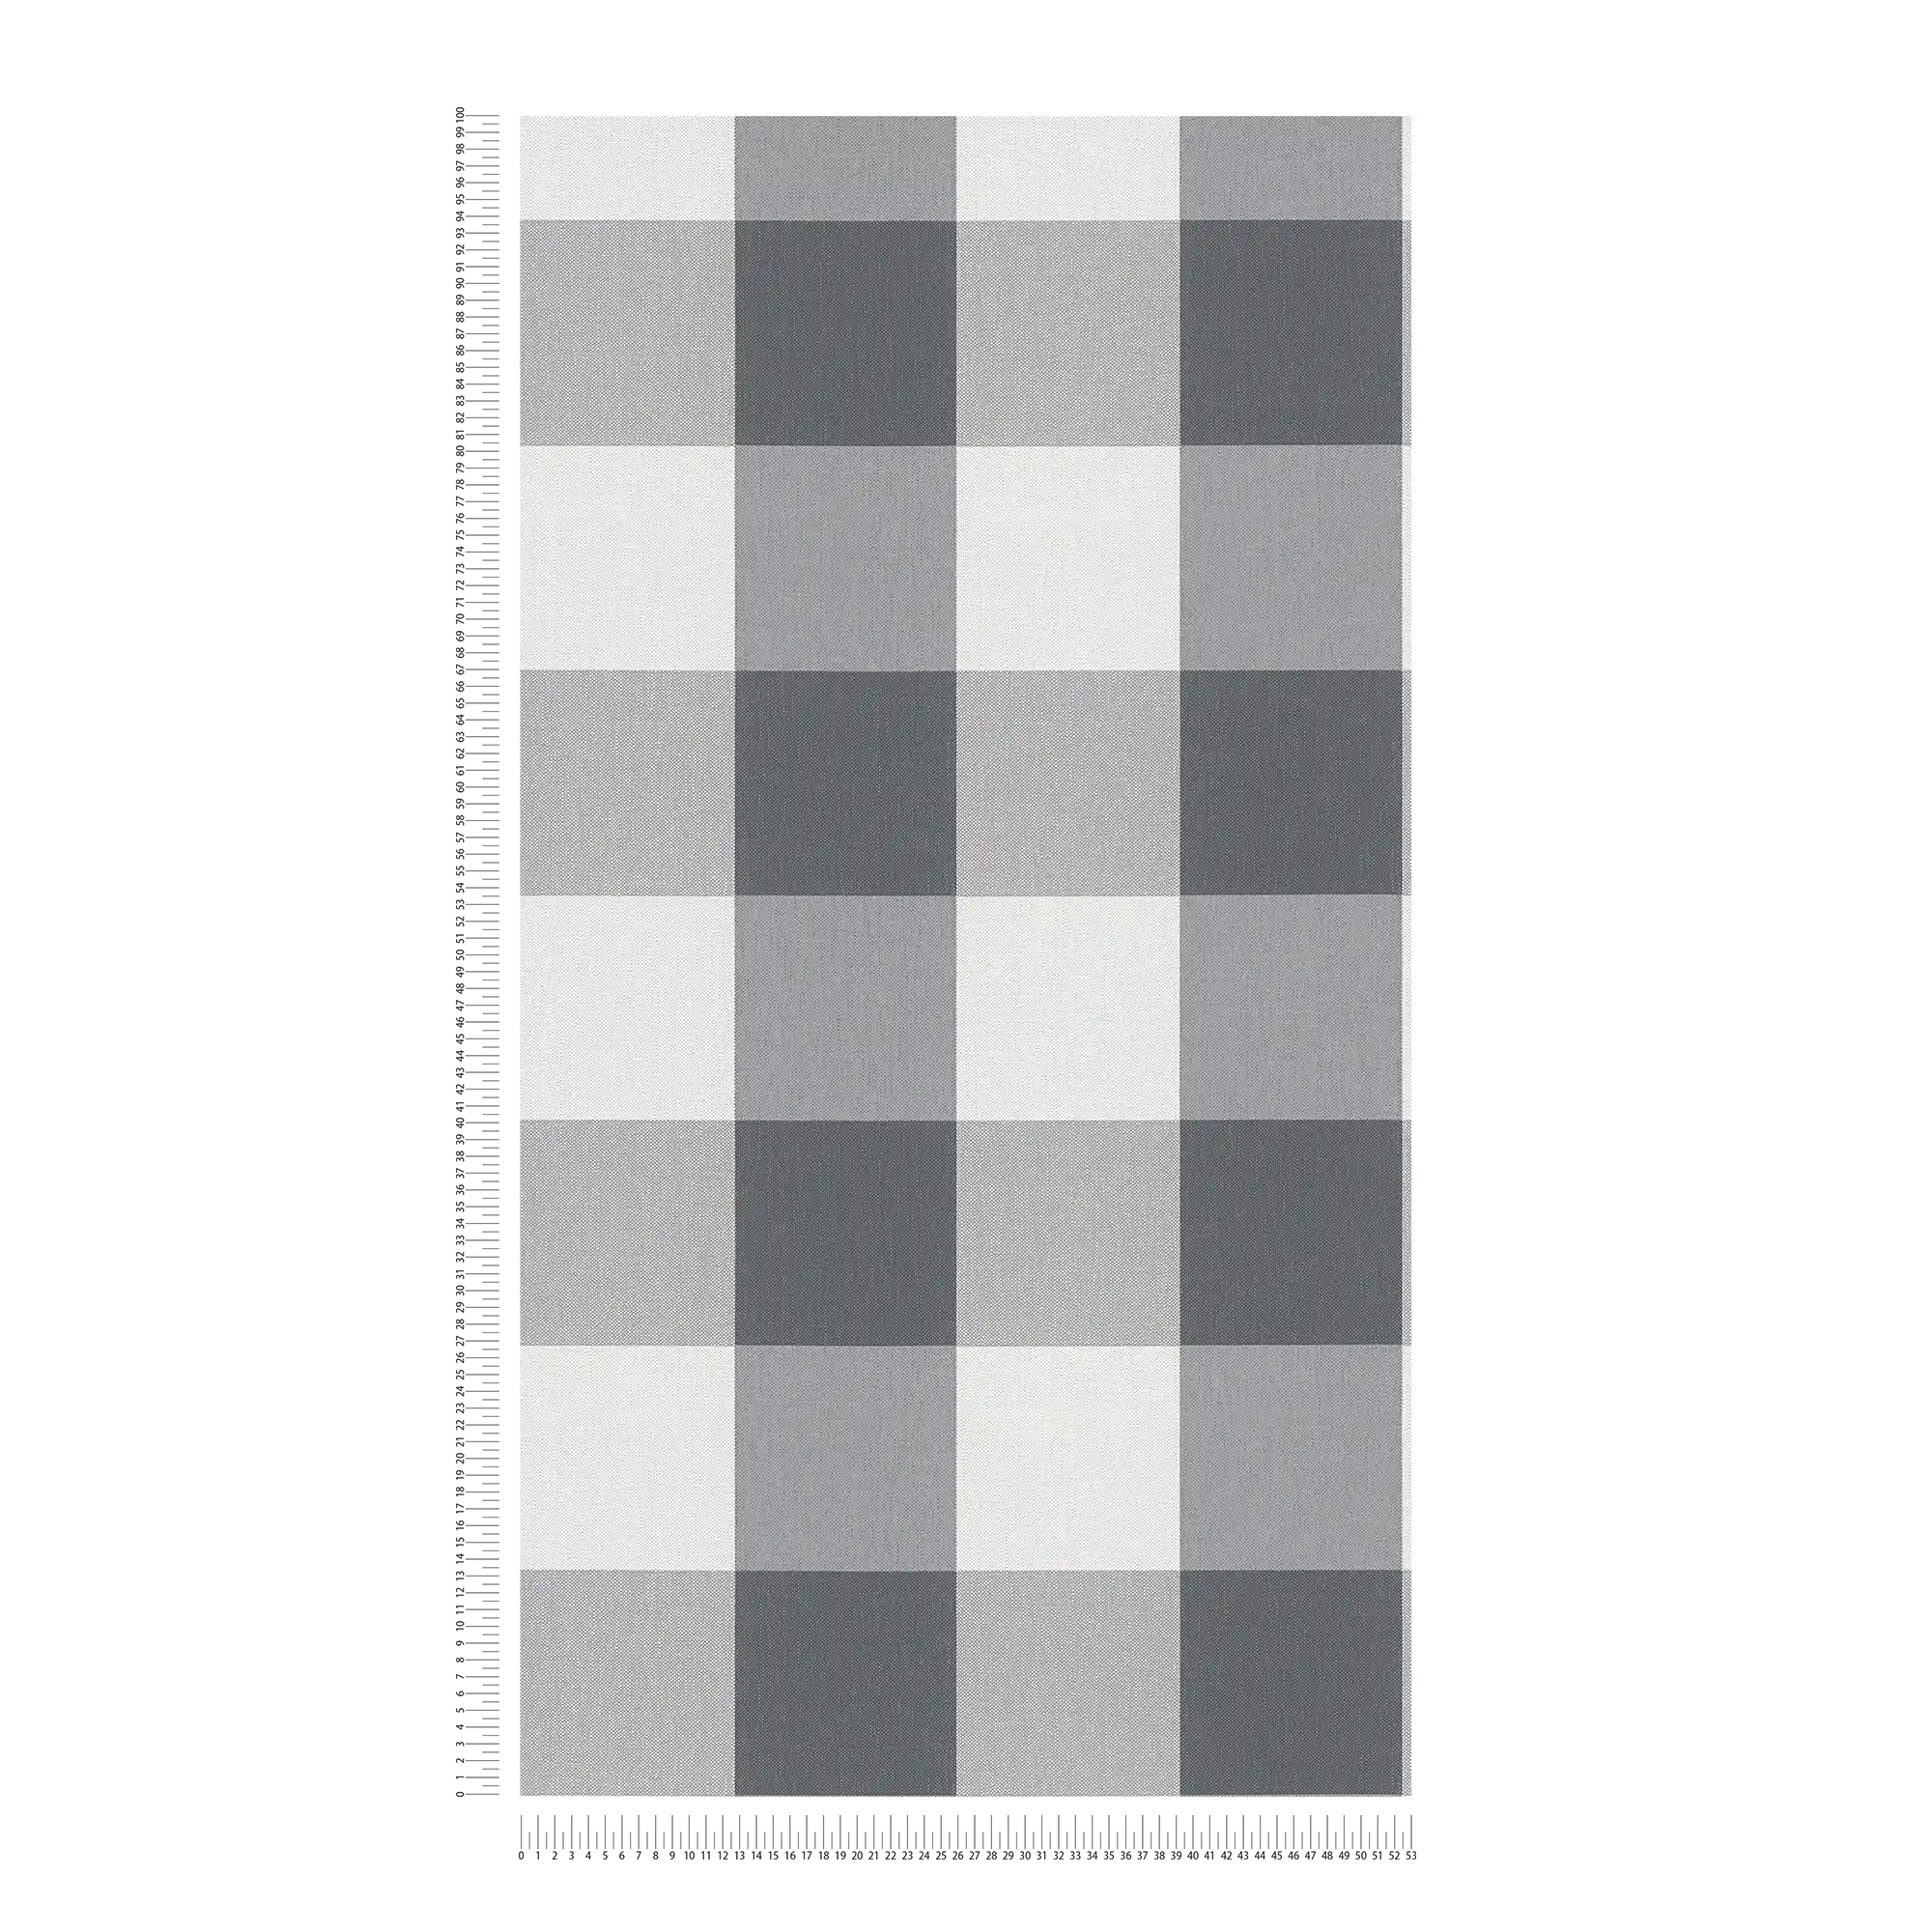             Papier peint à carreaux aspect textile dans des tons harmonieux - blanc, gris
        